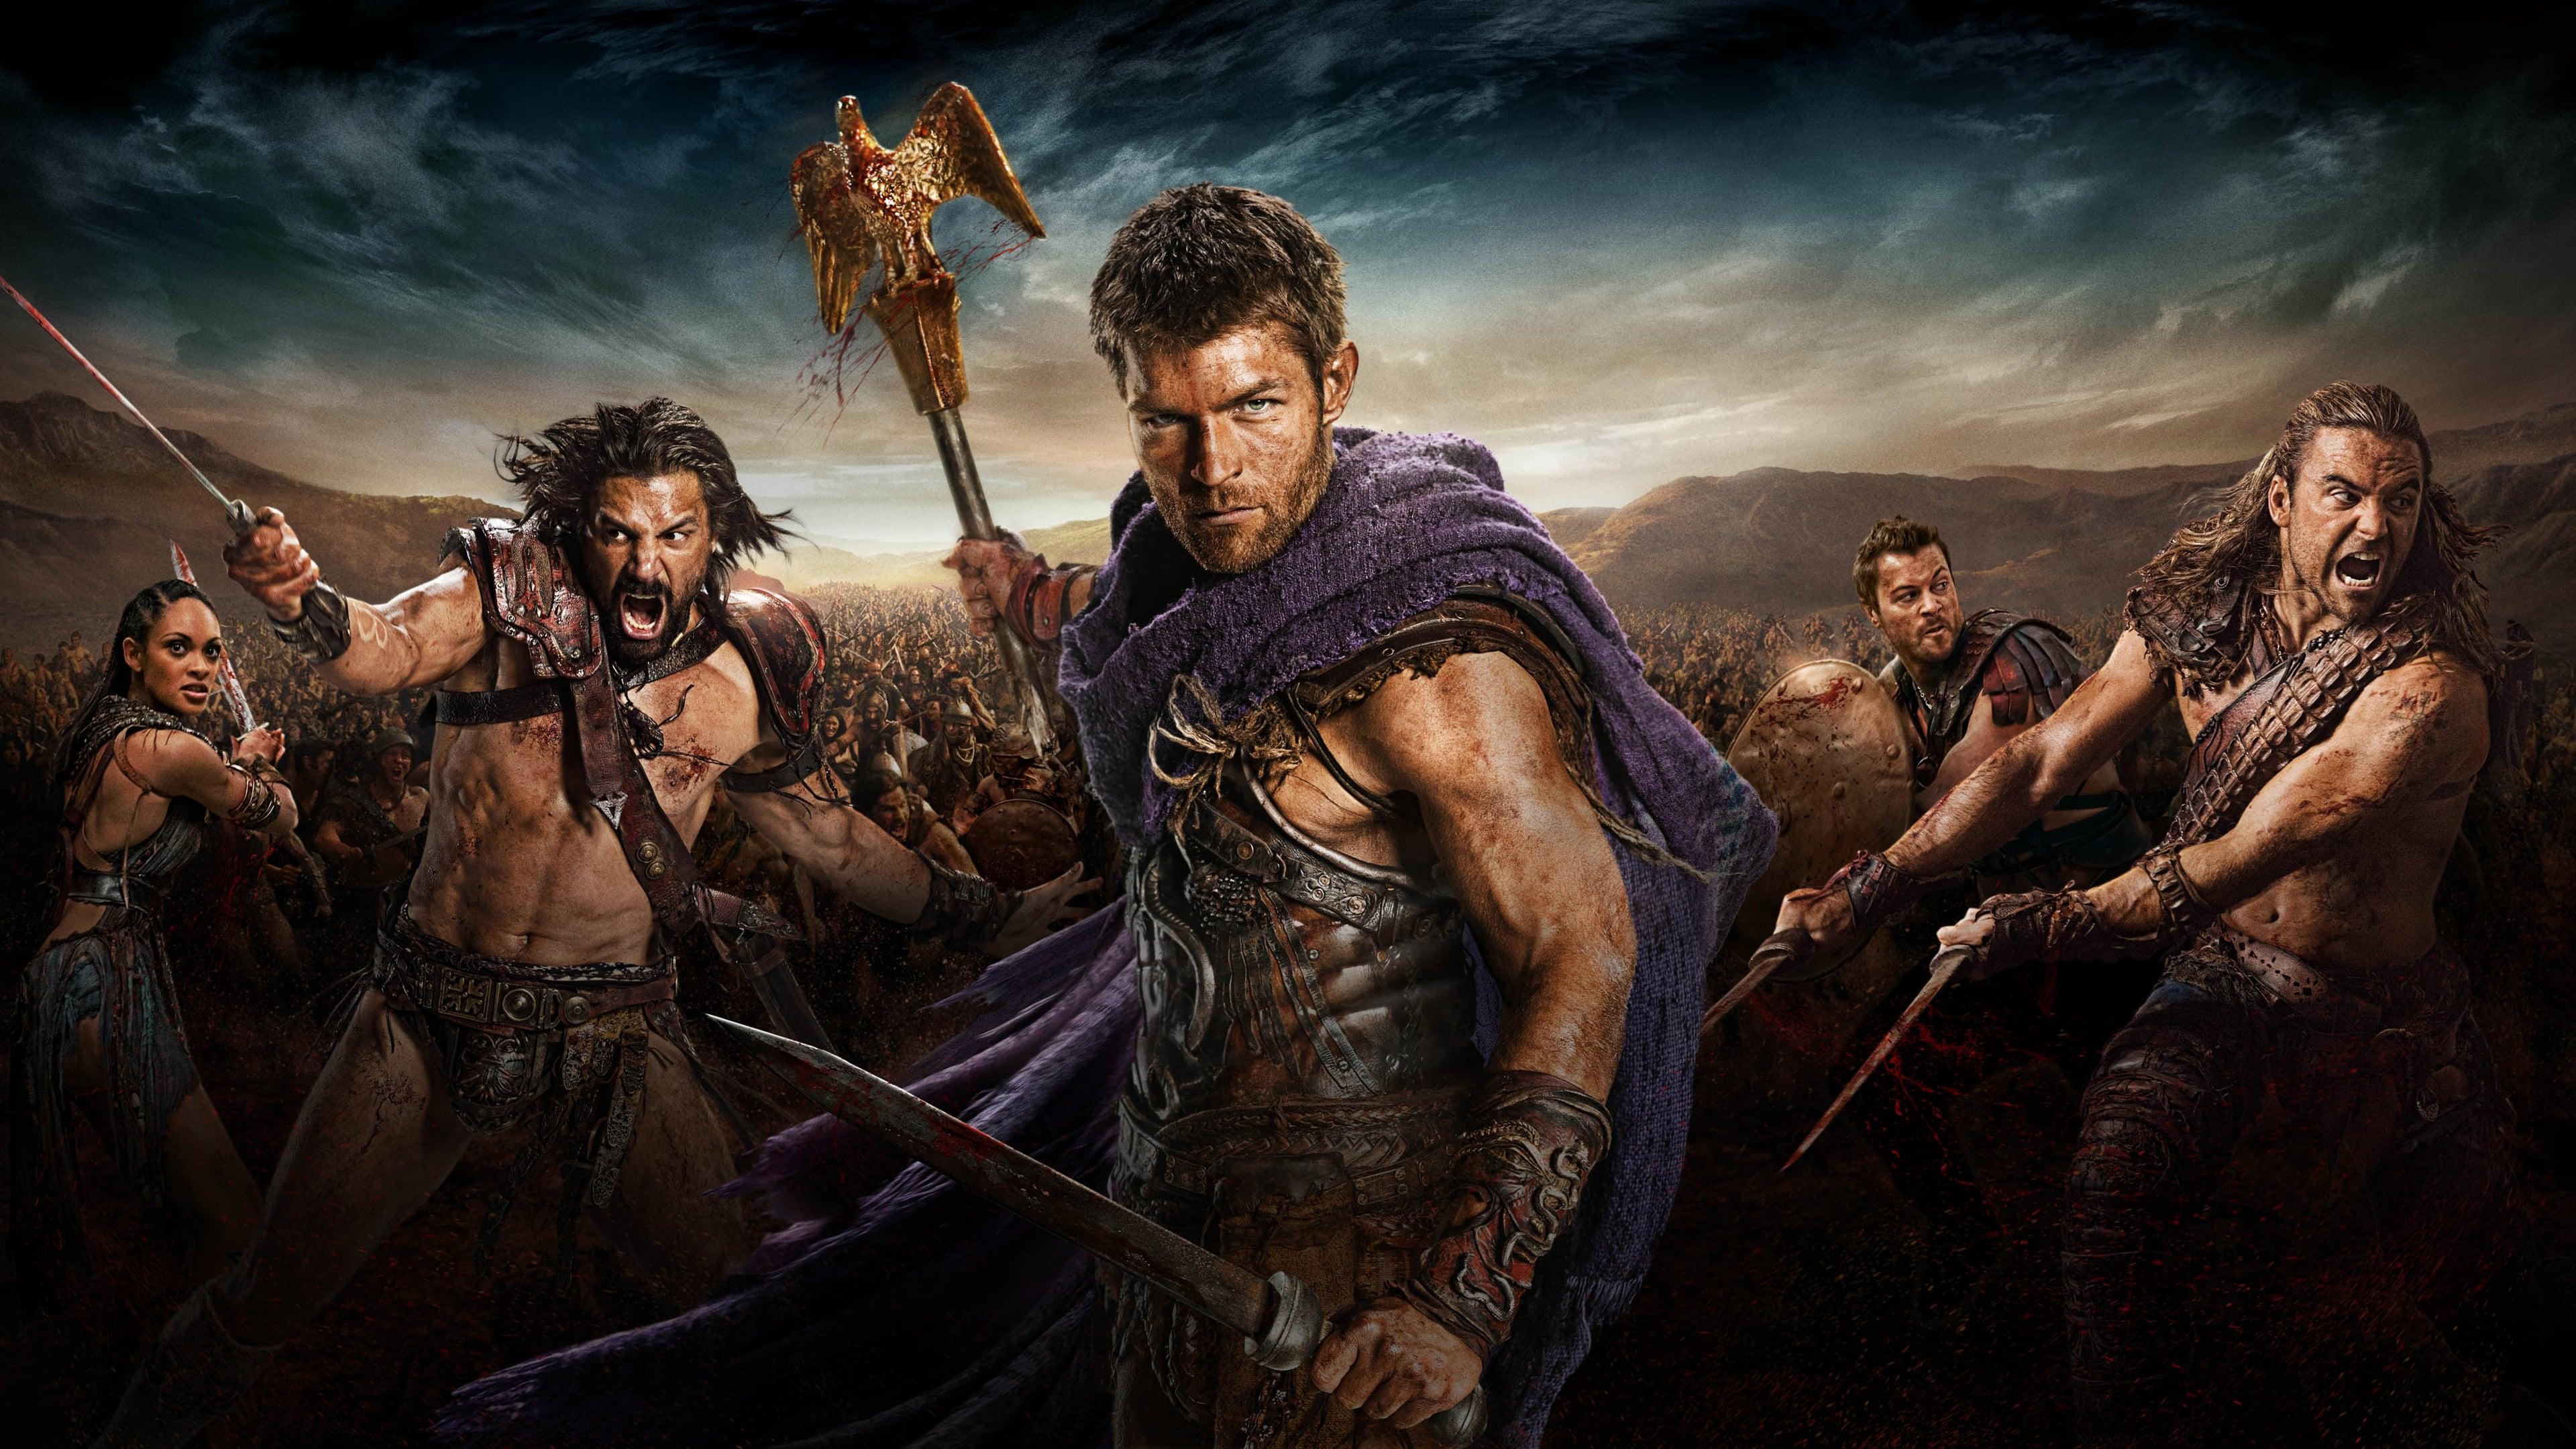 MSPF: Watch Spartacus Vengeance Season 1, Episode 8 Online